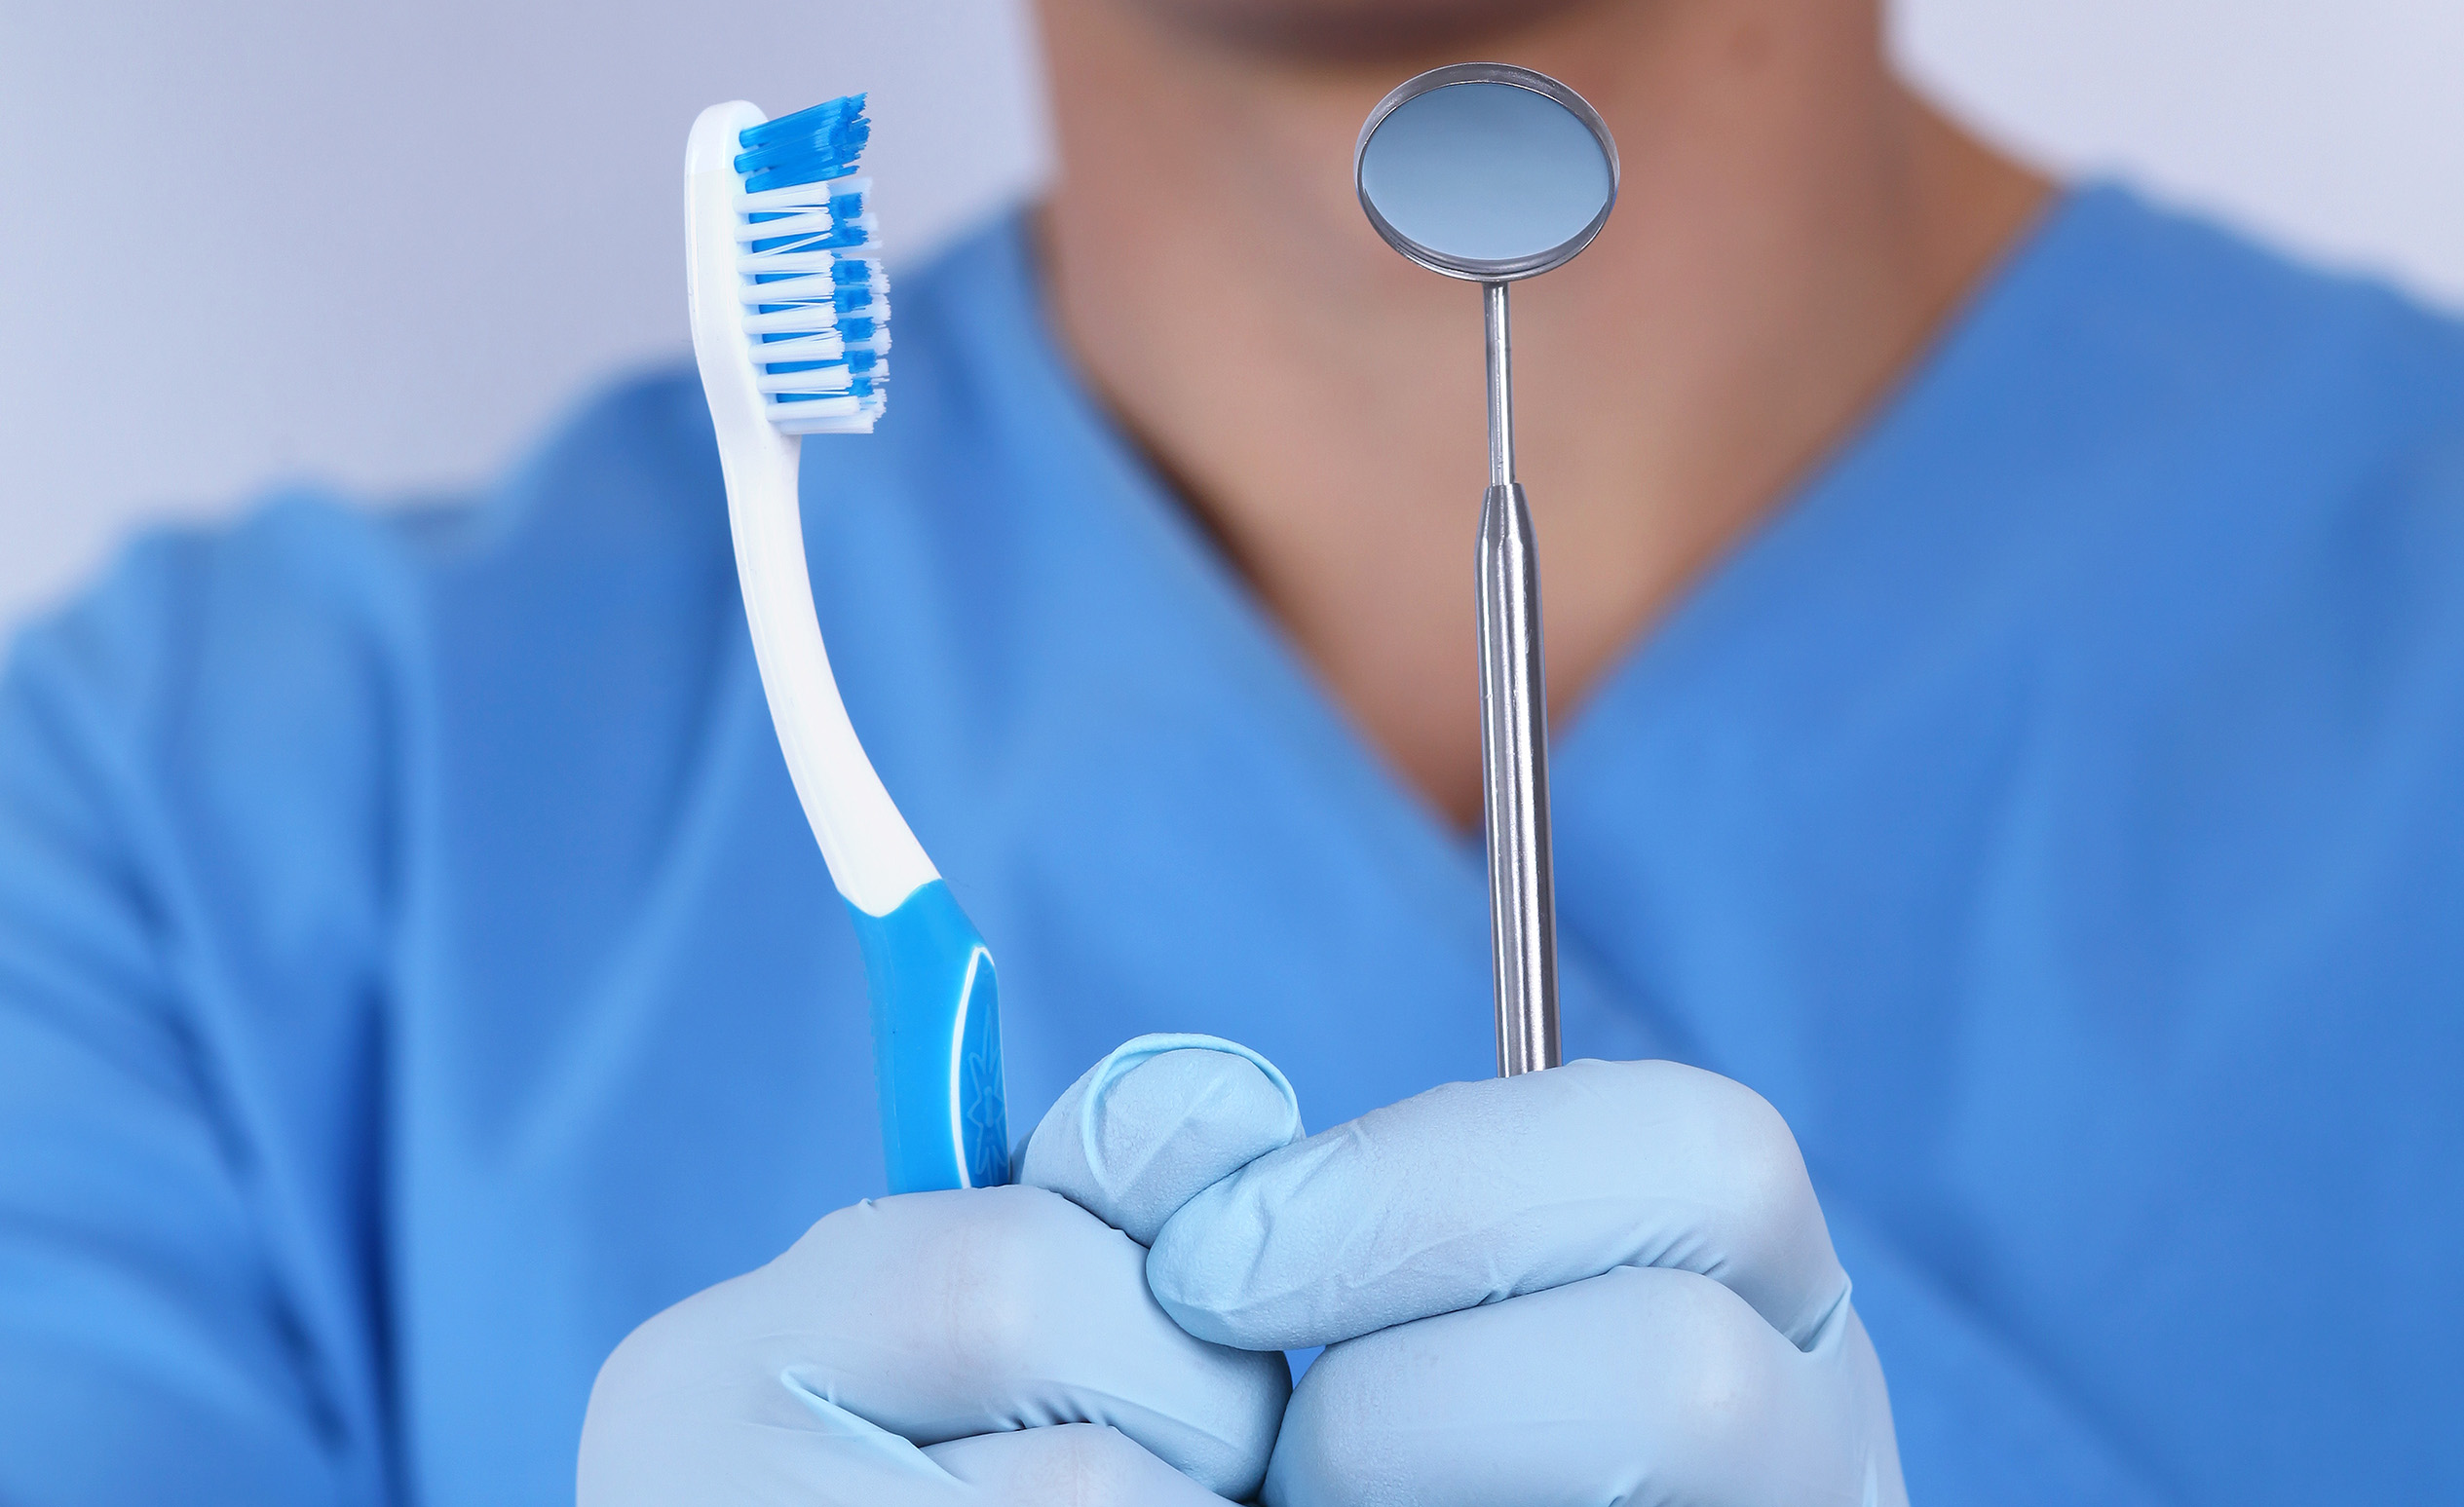 Budapesti fogorvos, Dr. Varajti Artúr fog egy fogkefét és egy fogászati fogtükört.